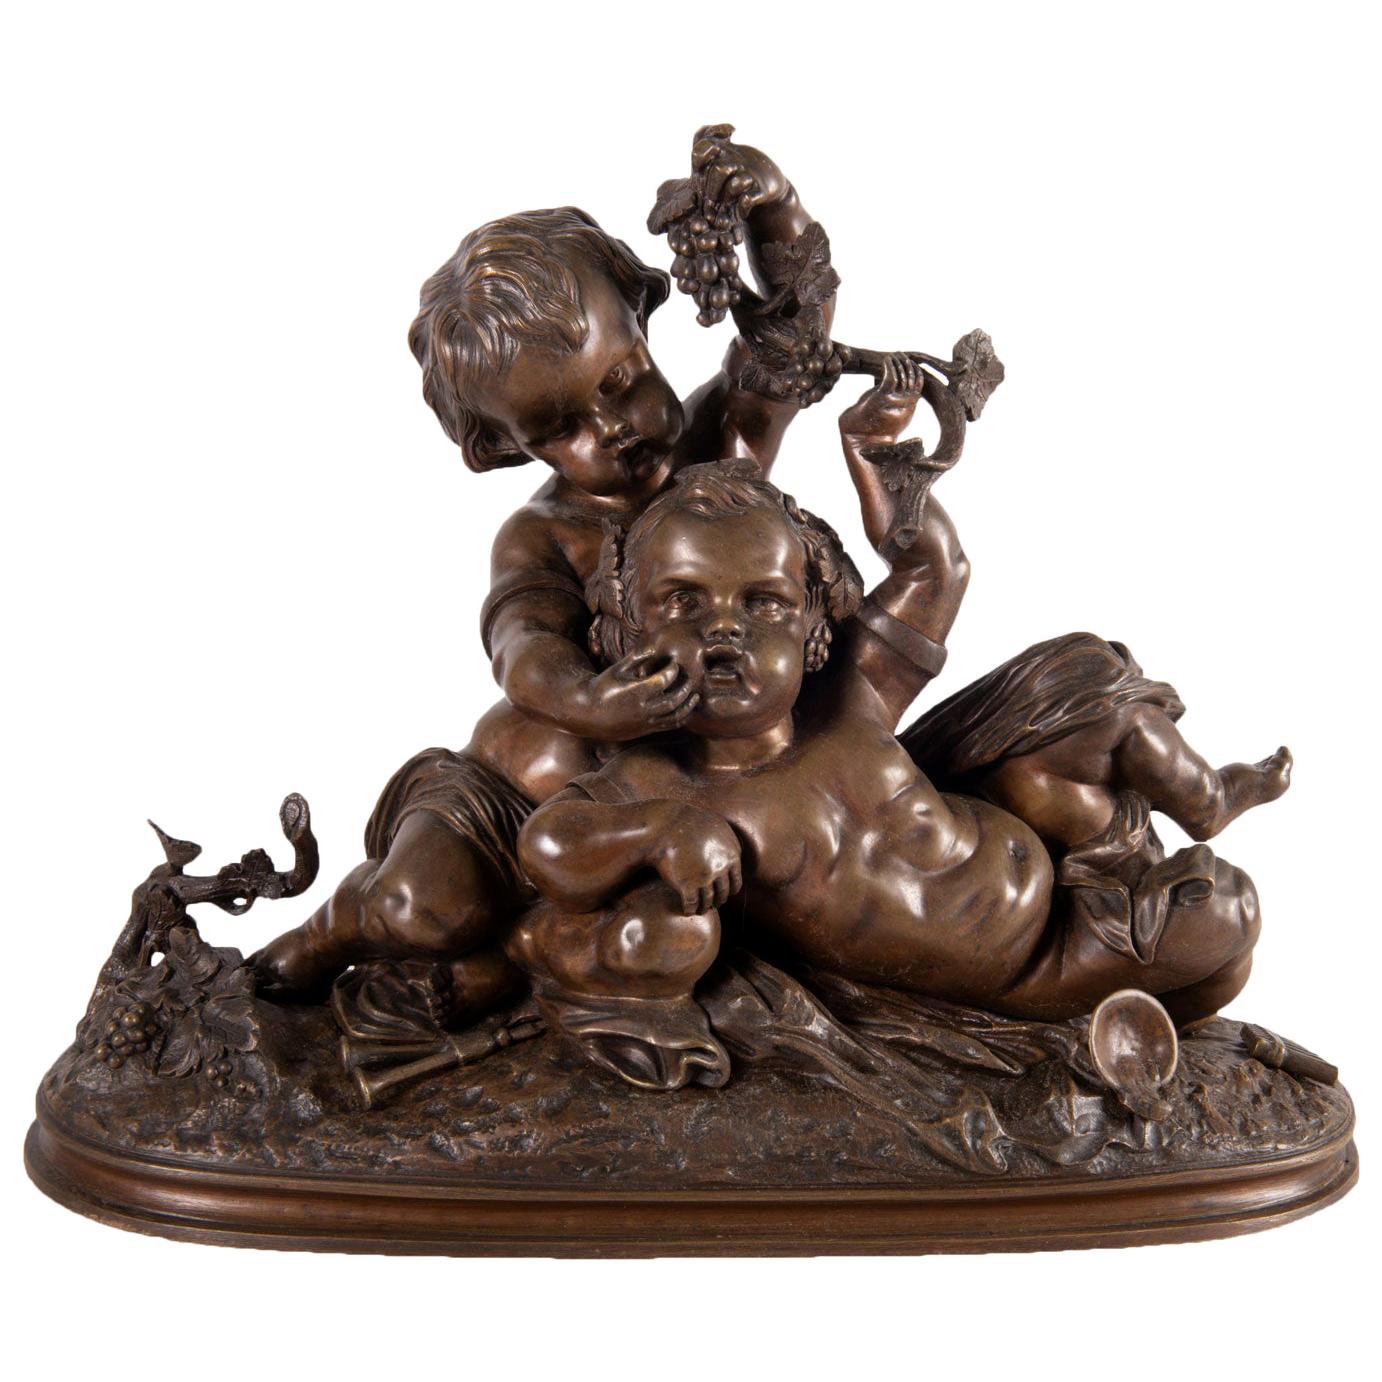 Bronze Bacchus-Gruppe von zwei Putten, die mit Trauben spielen, aus dem 19. Jahrhundert